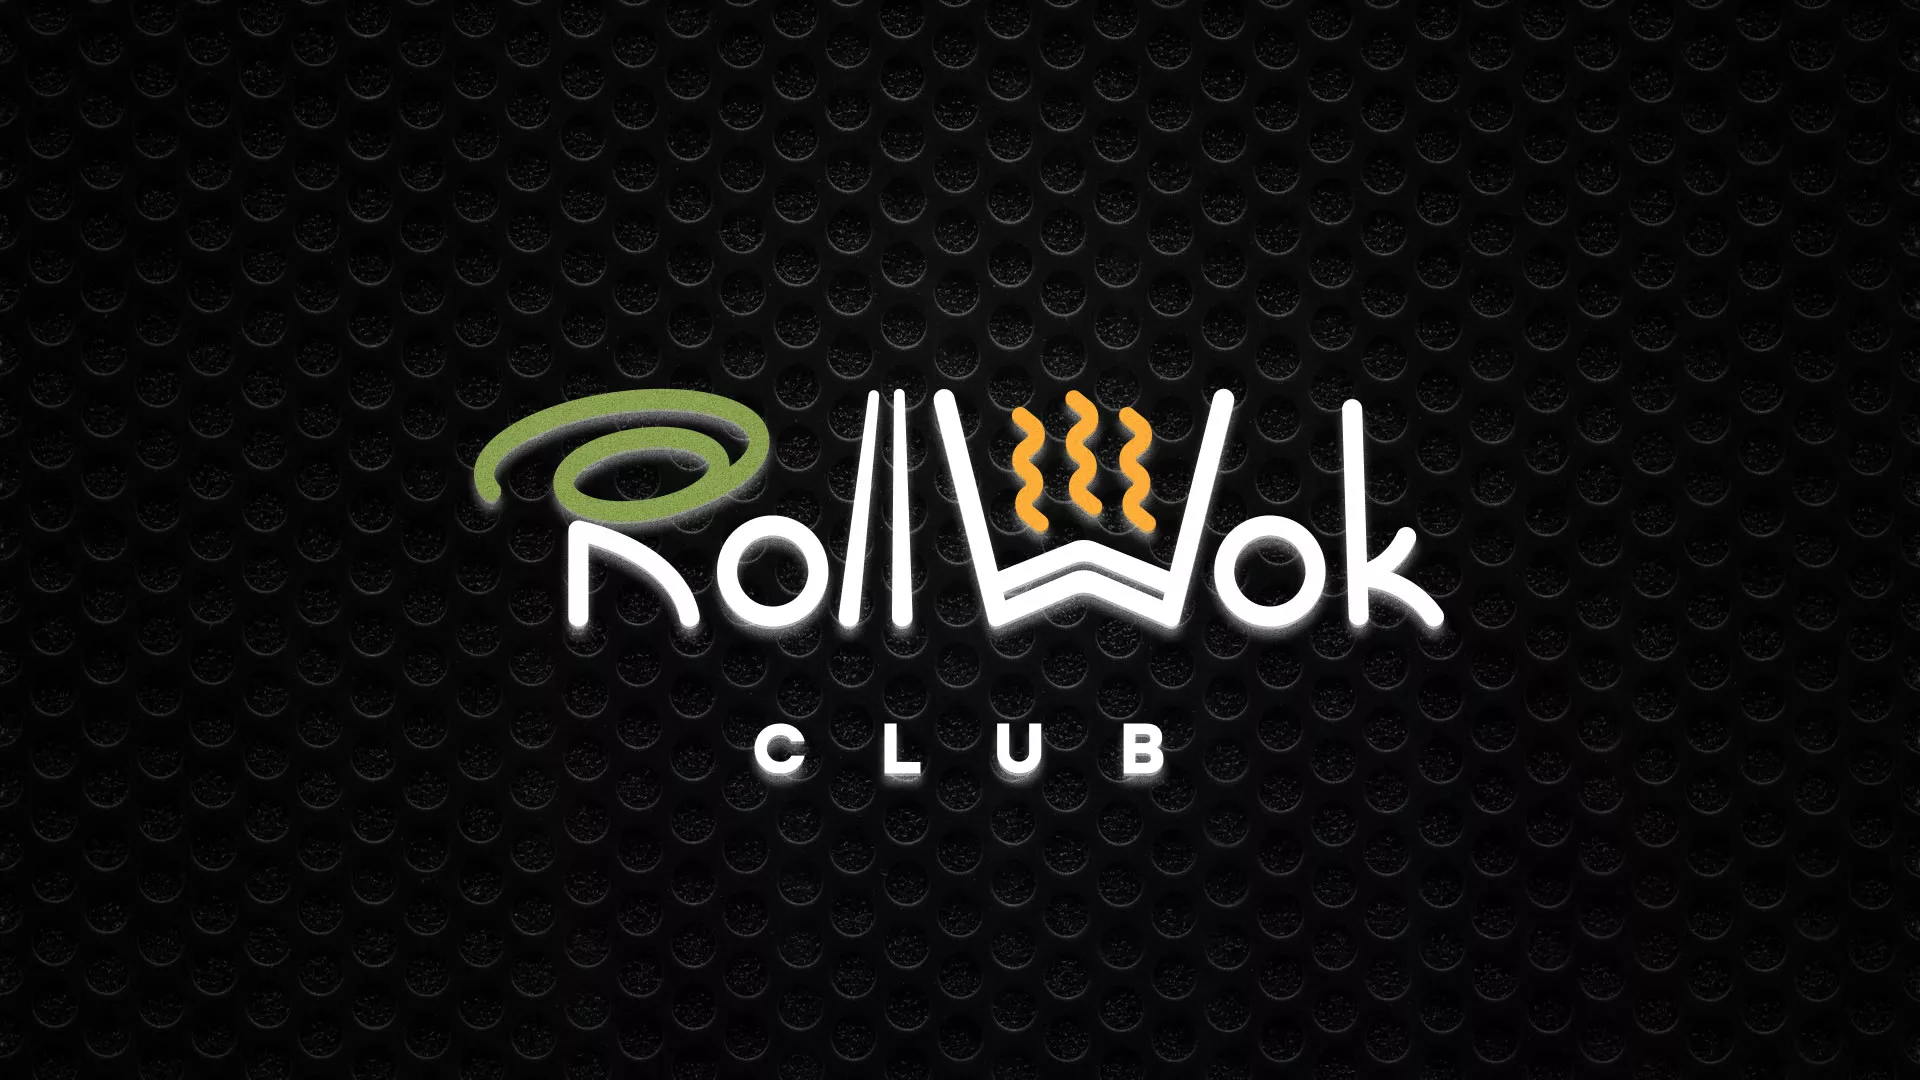 Брендирование торговых точек суши-бара «Roll Wok Club» в Ликино-Дулево